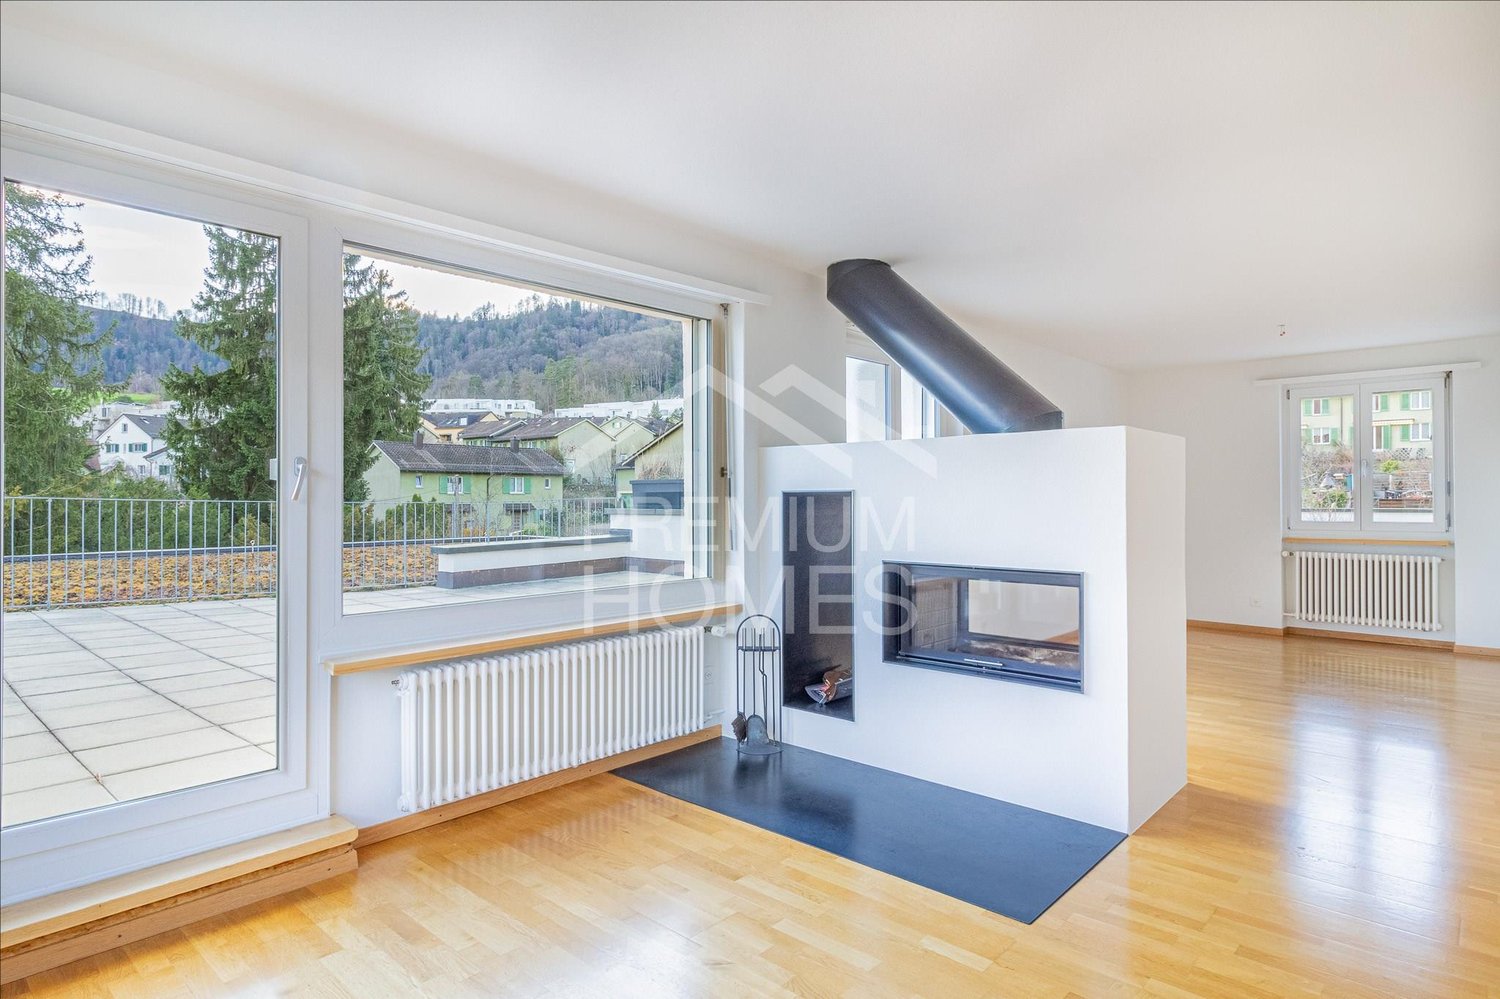 5.5-Zimmer-Attika in Zürich-Leimbach mit traumhafter Terrasse